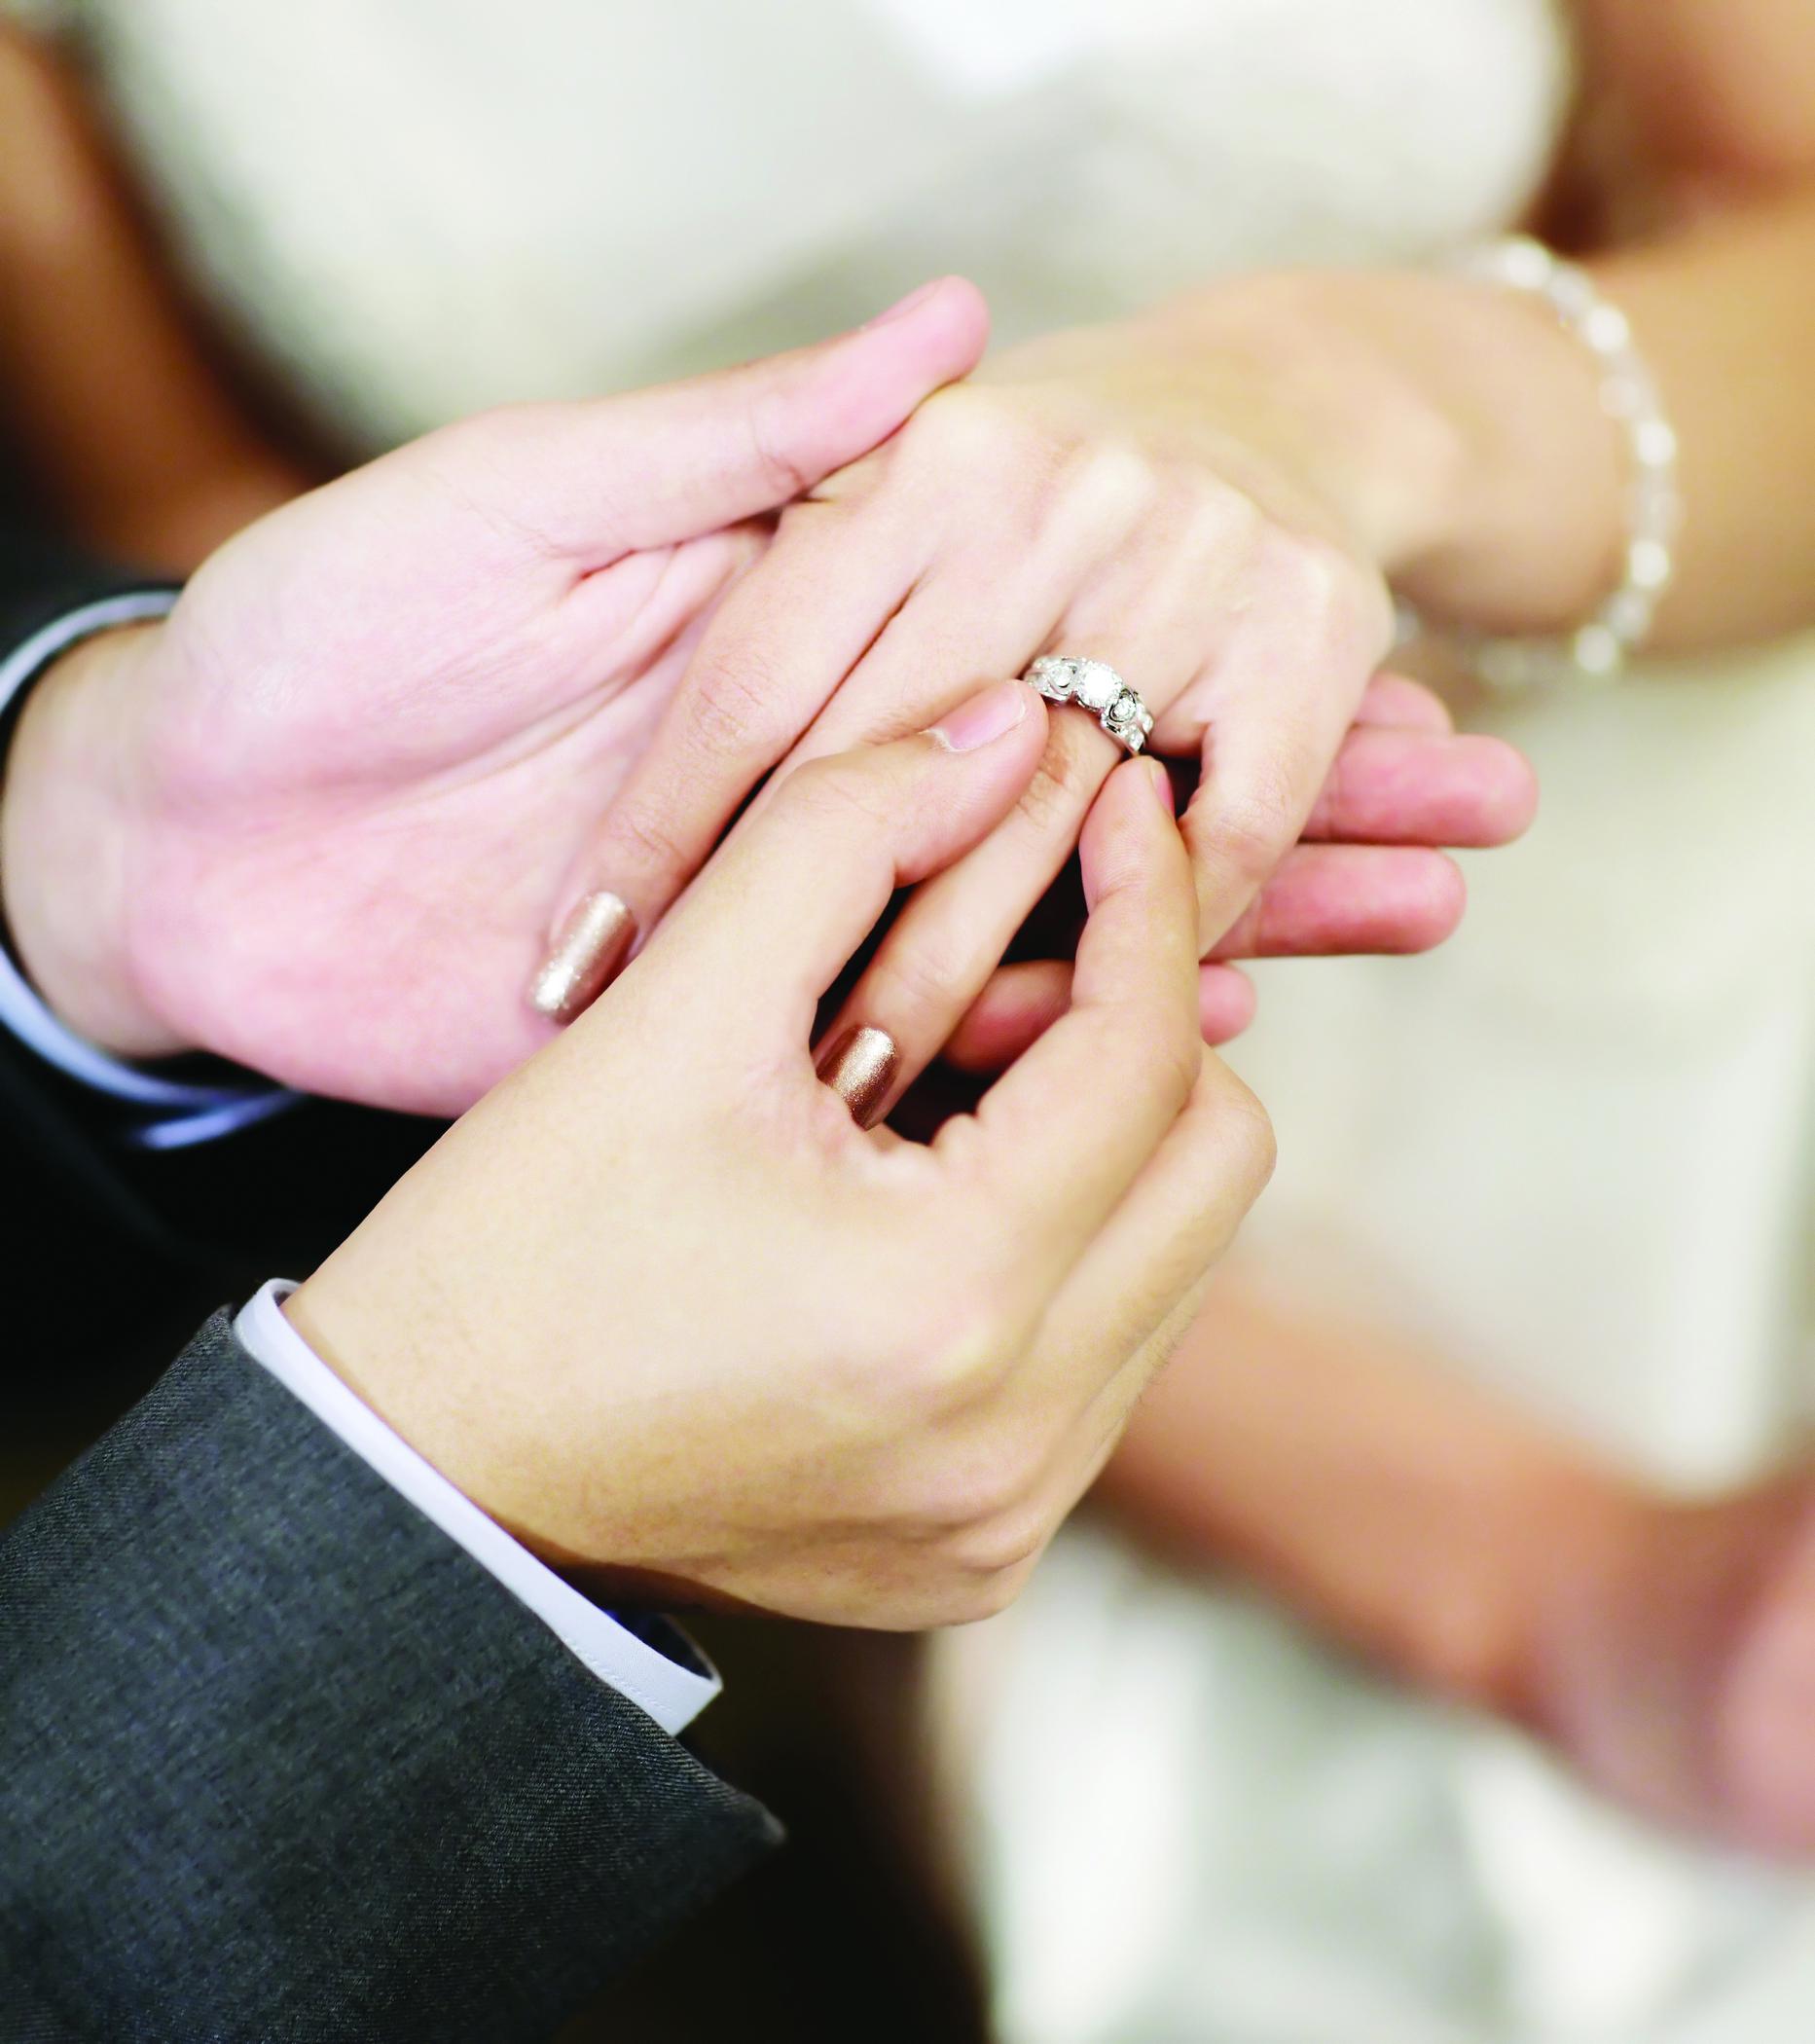 Замуж на какую руку кольцо. Обручальные кольца на руках. Обручальное кольцо на пальце. Красивые обручальные кольца на руках. Свадебные кольца на пальцах.